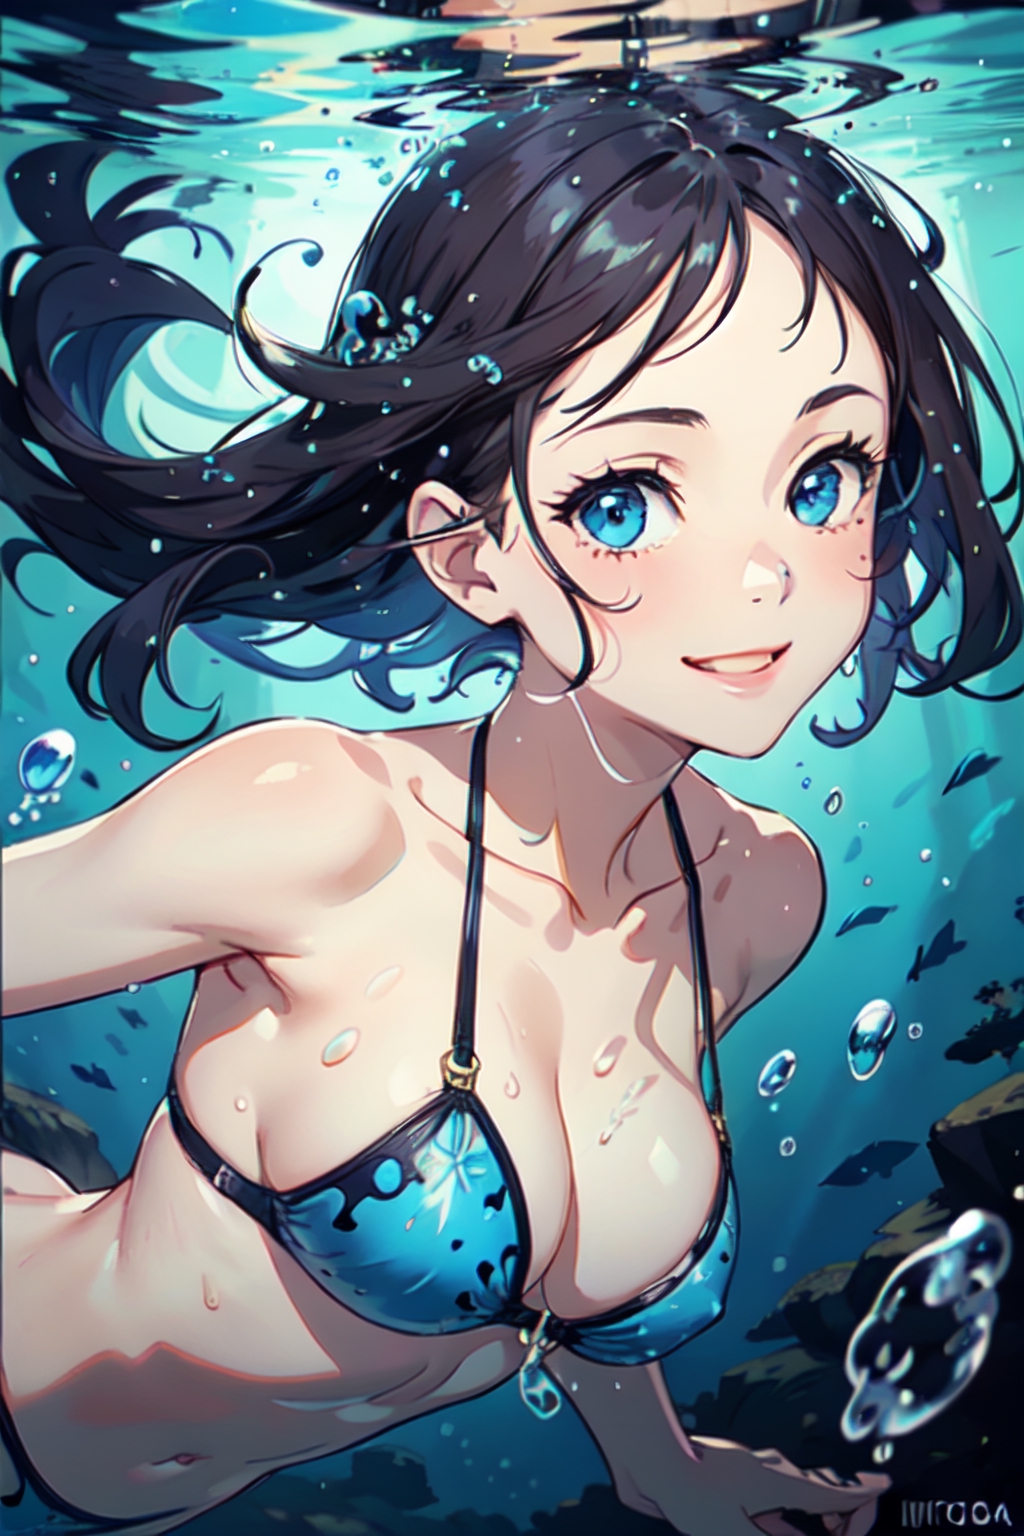 Bikini Beauty in the Water [Original] : r/AnimeGirlsEarrings